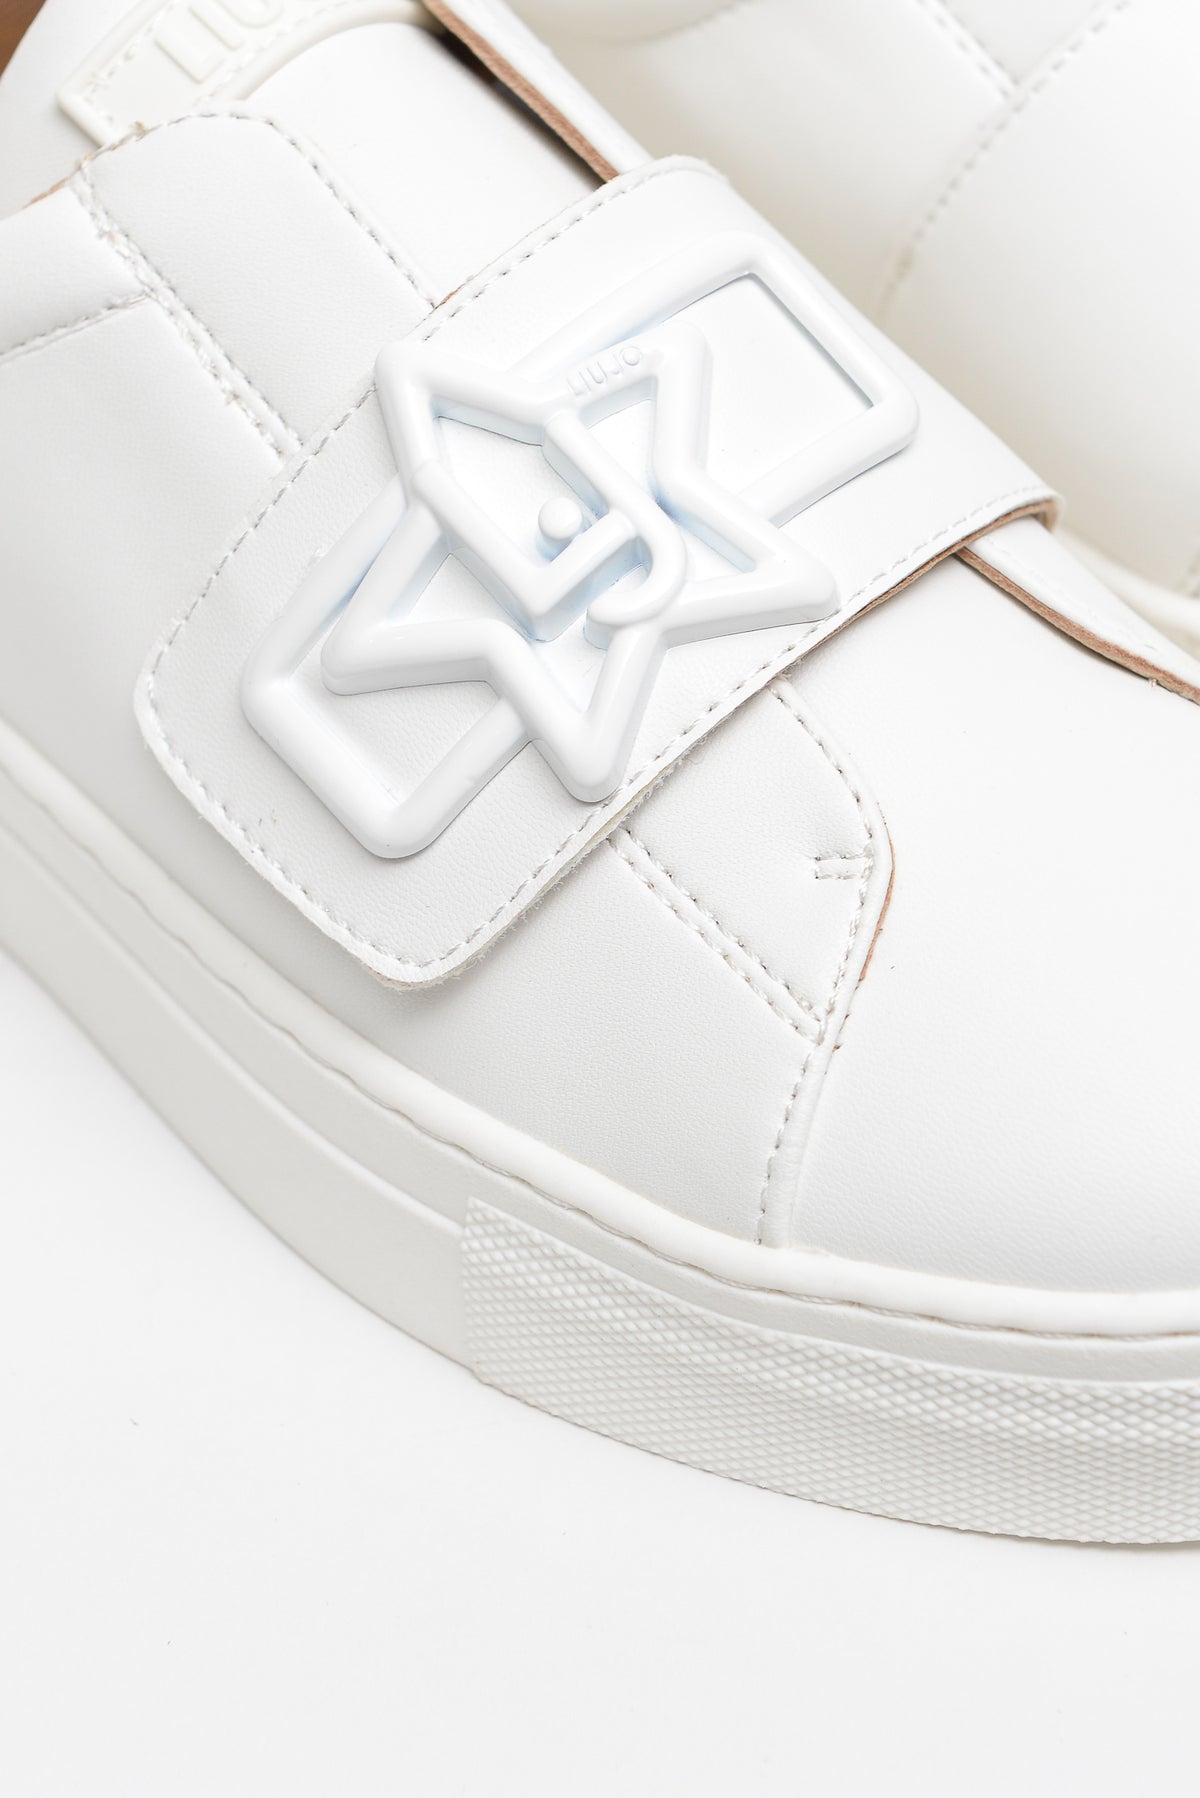 Liu Jo Shoes Sneakers Fdo Cassetta Bianco Bambina - 6